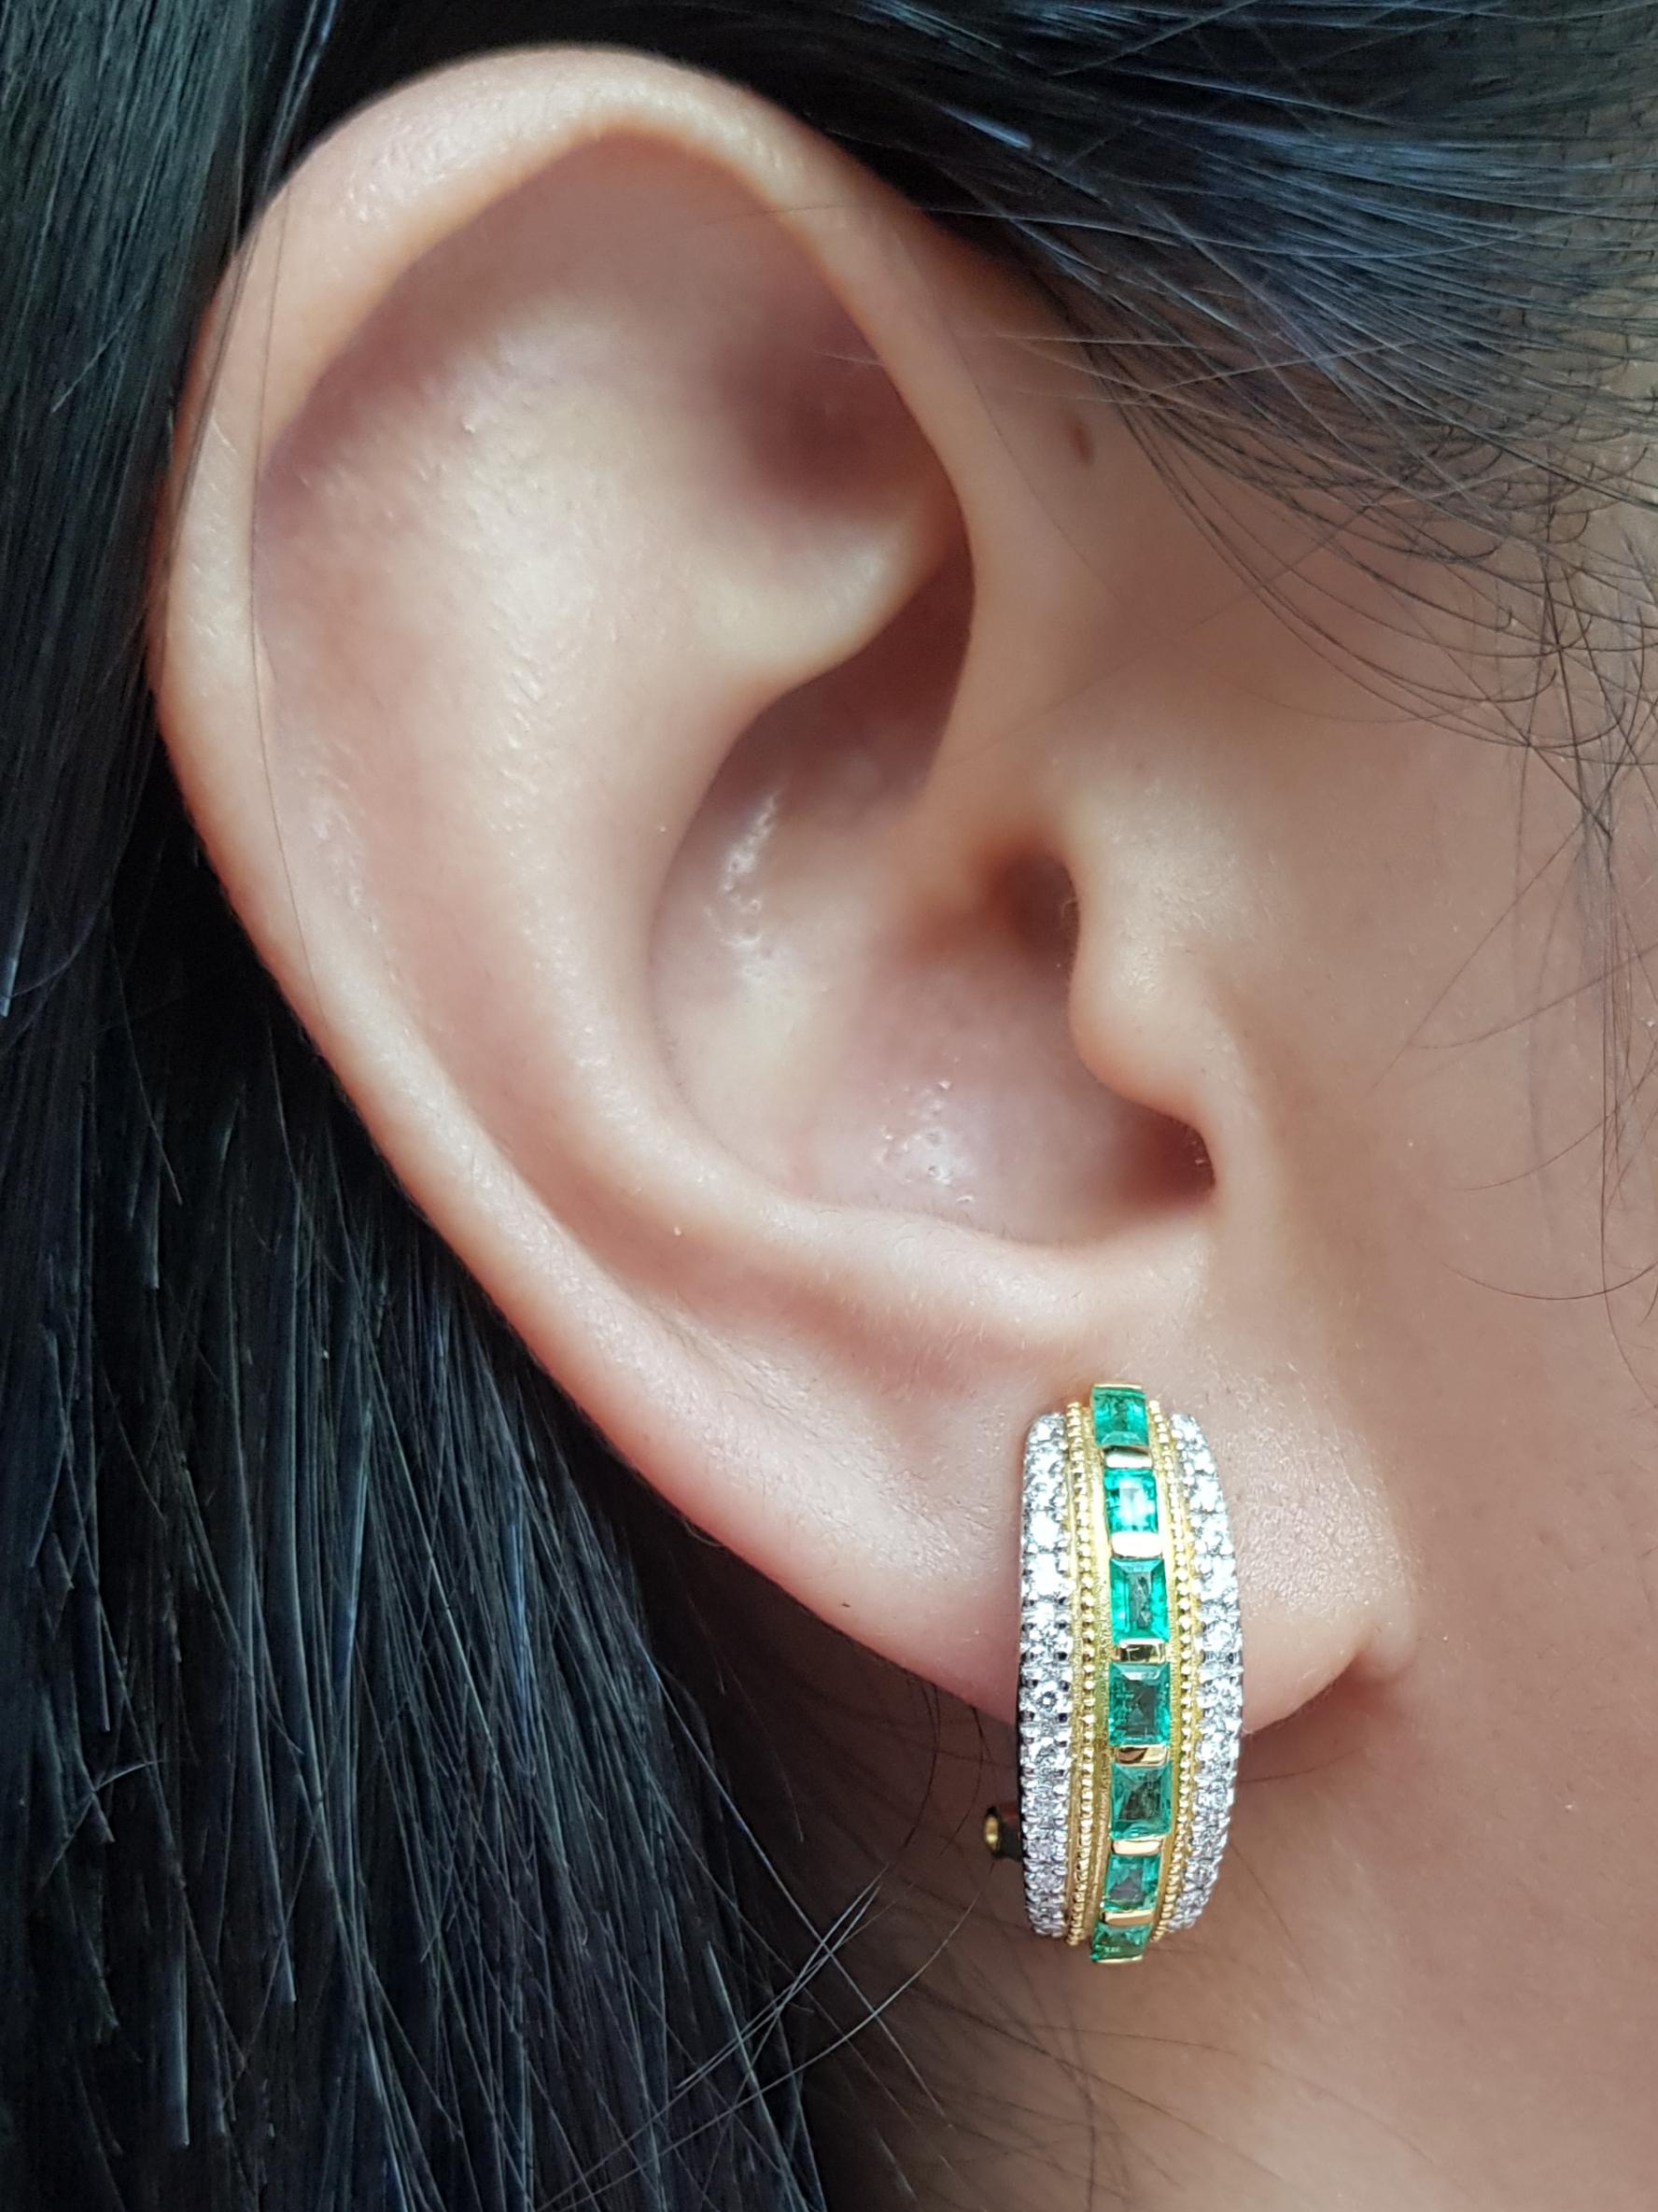 Smaragd 1,20 Karat mit Diamant 0,43 Karat Ohrringe in 18 Karat Goldfassung

Breite:  0.8 cm 
Länge: 2,1 cm
Gesamtgewicht: 12,04 Gramm

